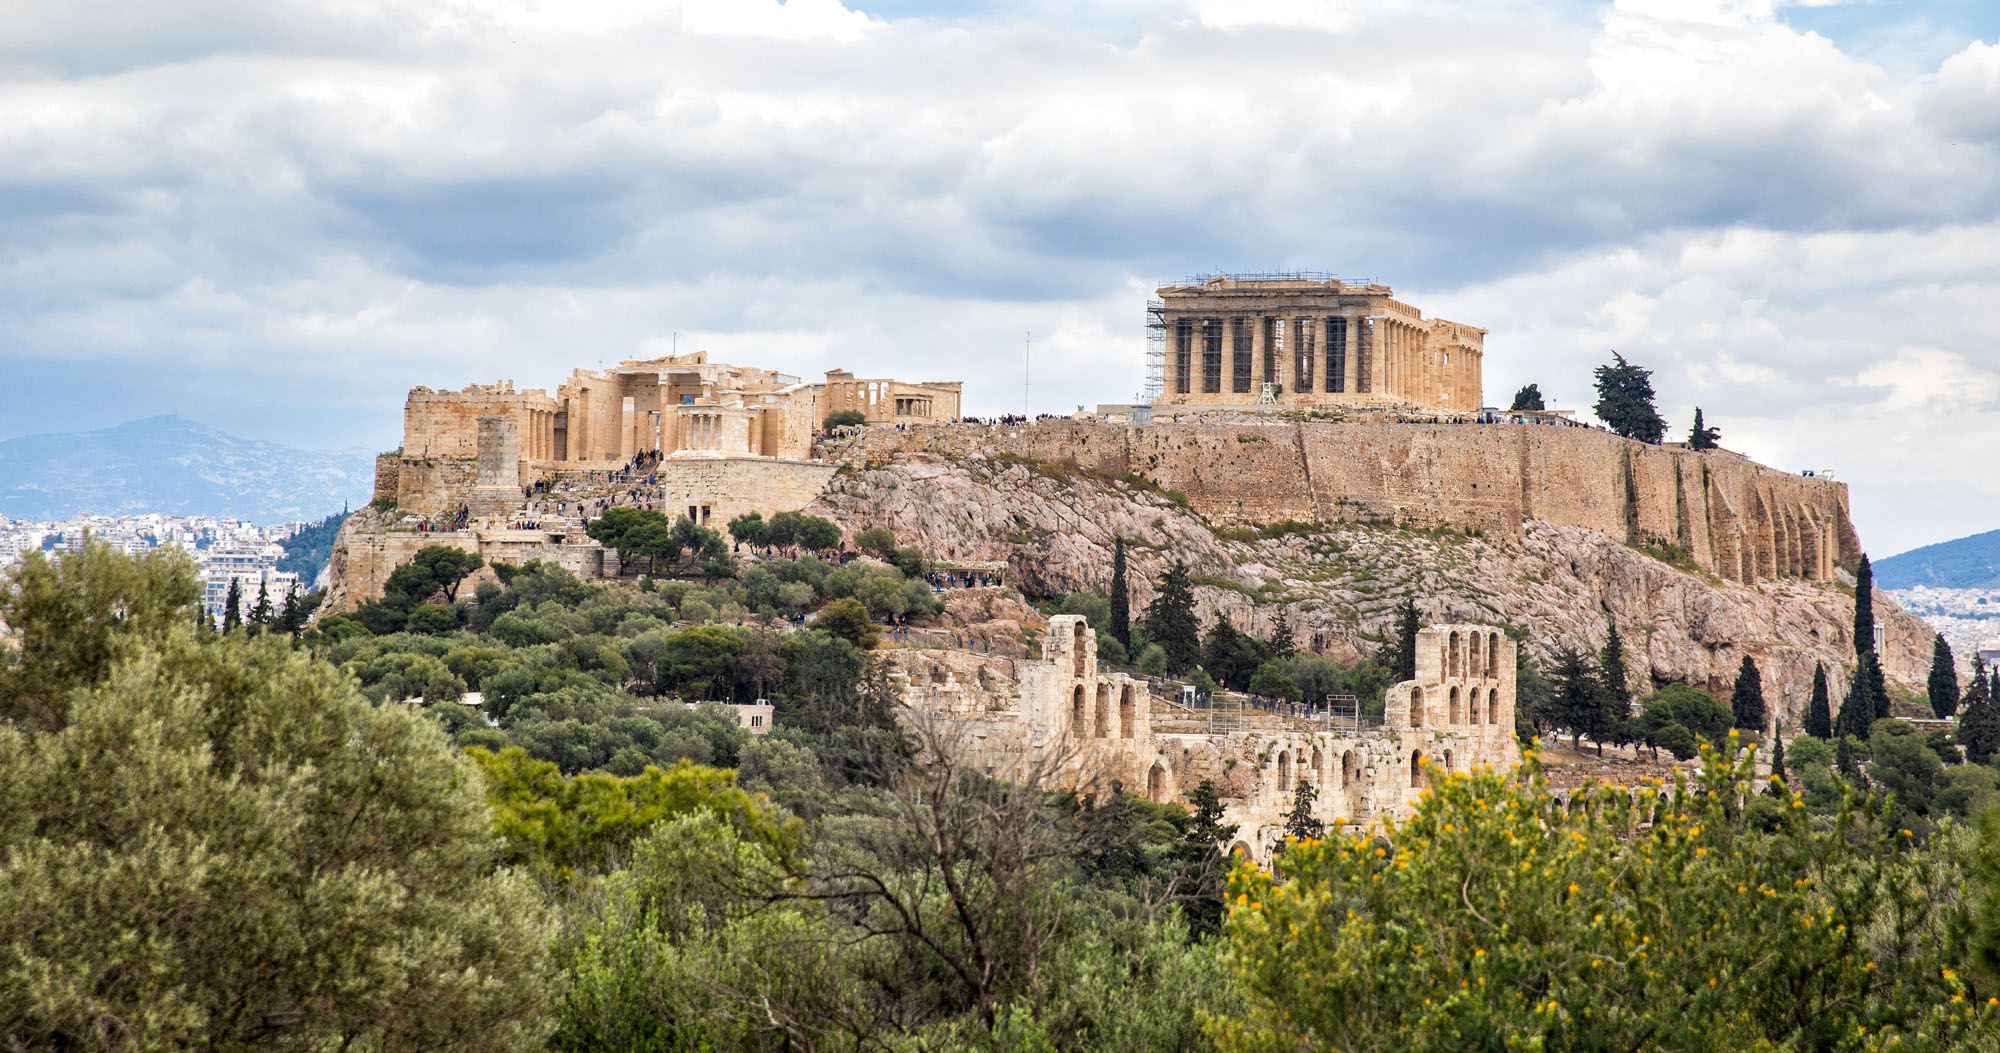 Αν ετοιμάζεσαι για ταξίδι στην Ελλάδα, η πιο κάτω ανακοίνωση σε αφορά